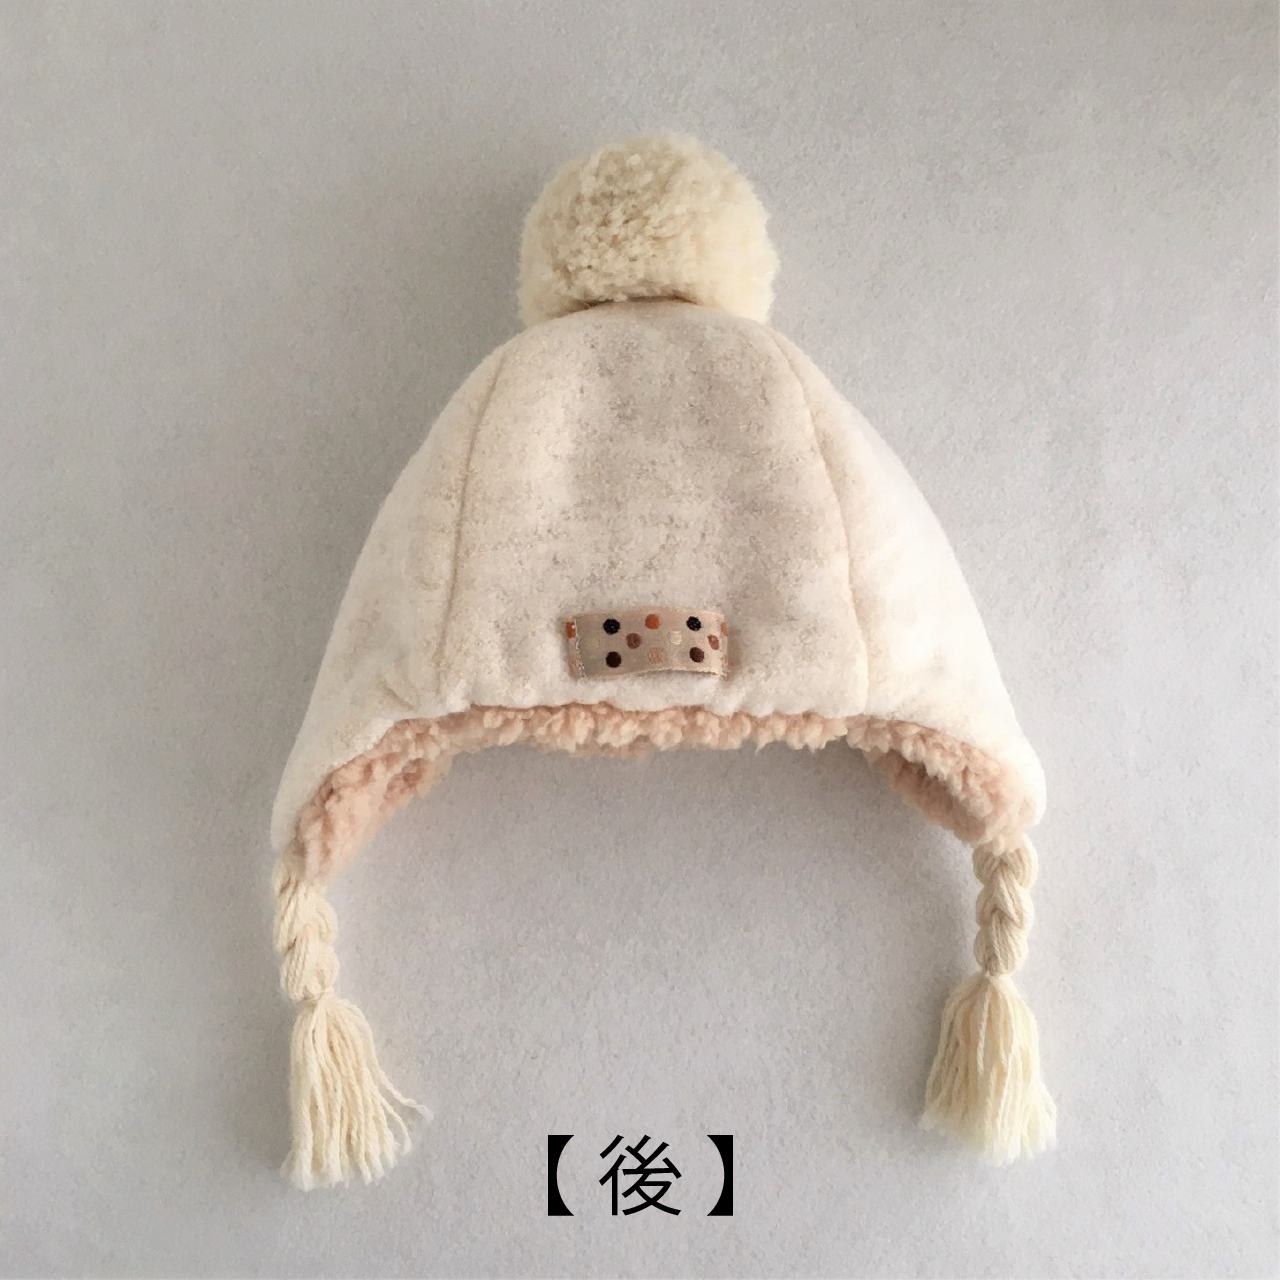 ぬくフワのポンポン付き帽子 型紙と作り方のセット Acｰ19 子供服の型紙ショップ Tsukuro ツクロ